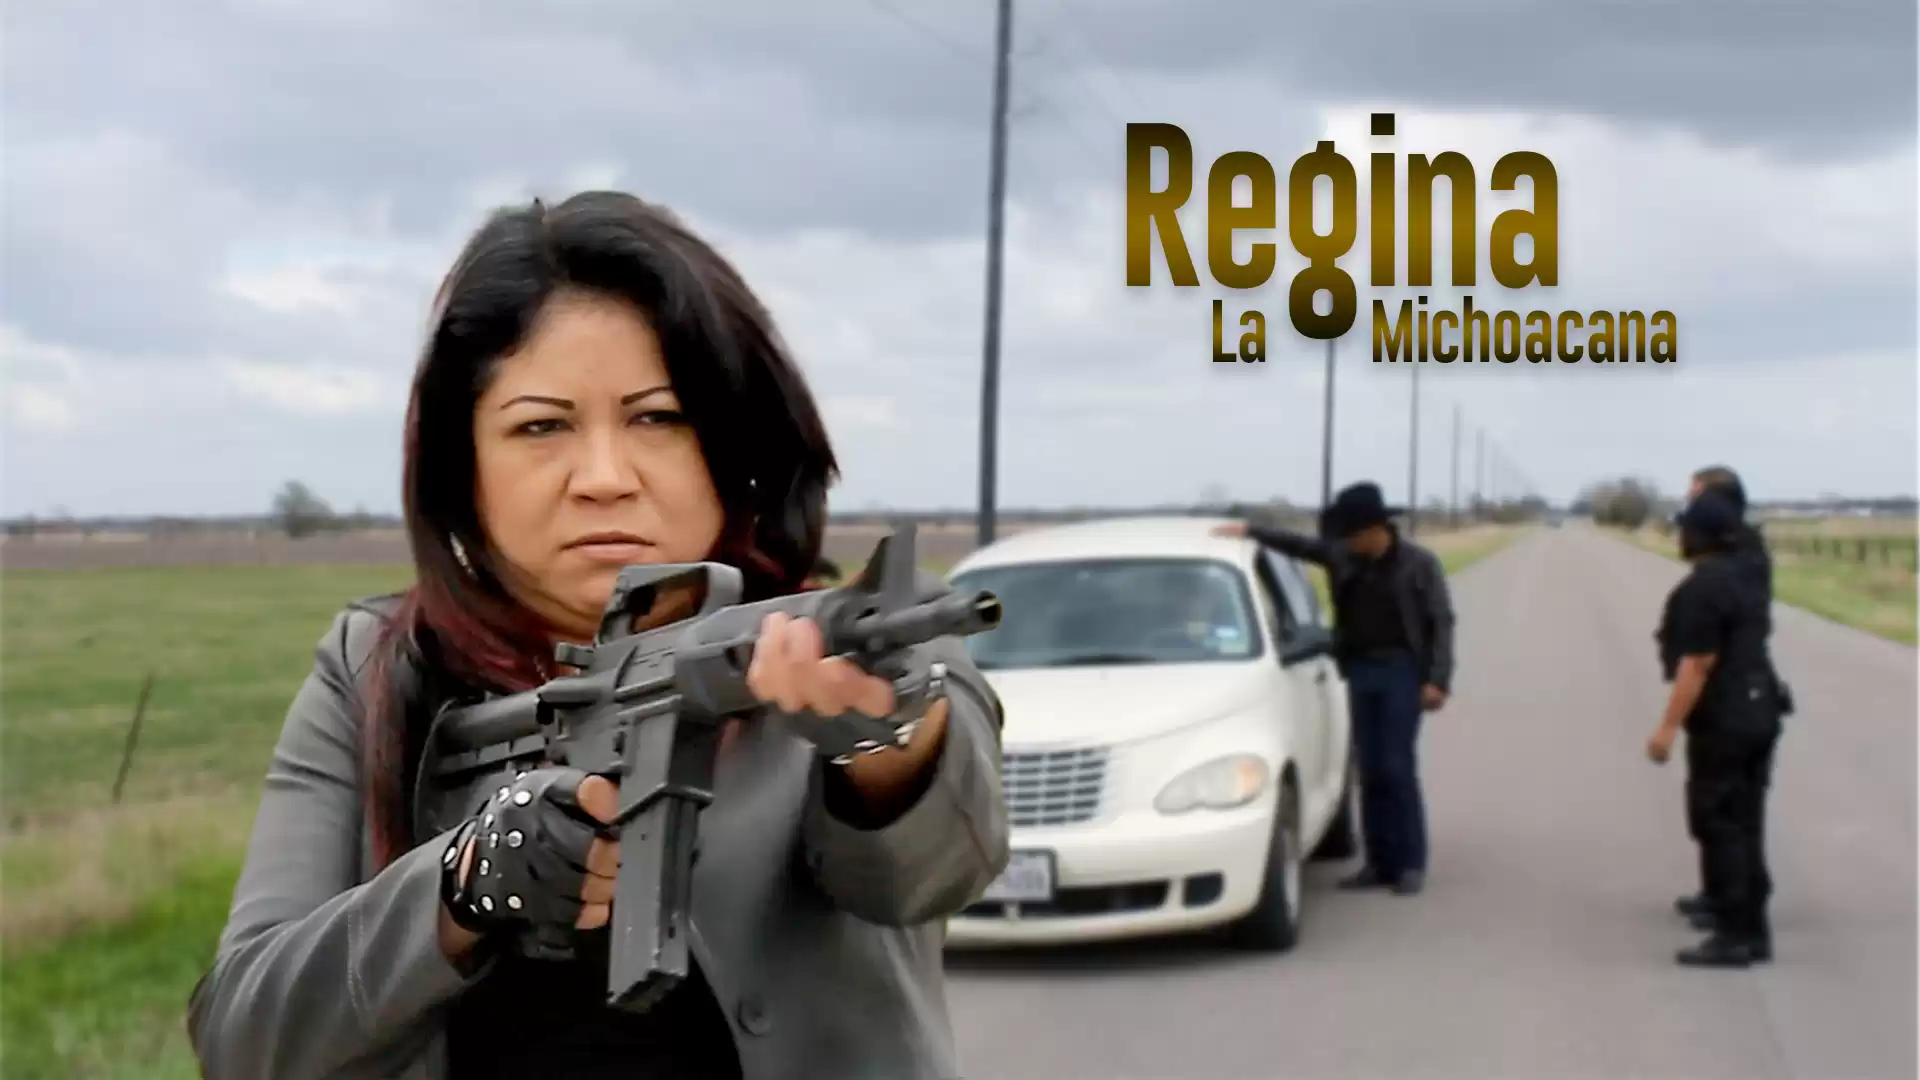 Regina La Michoacana